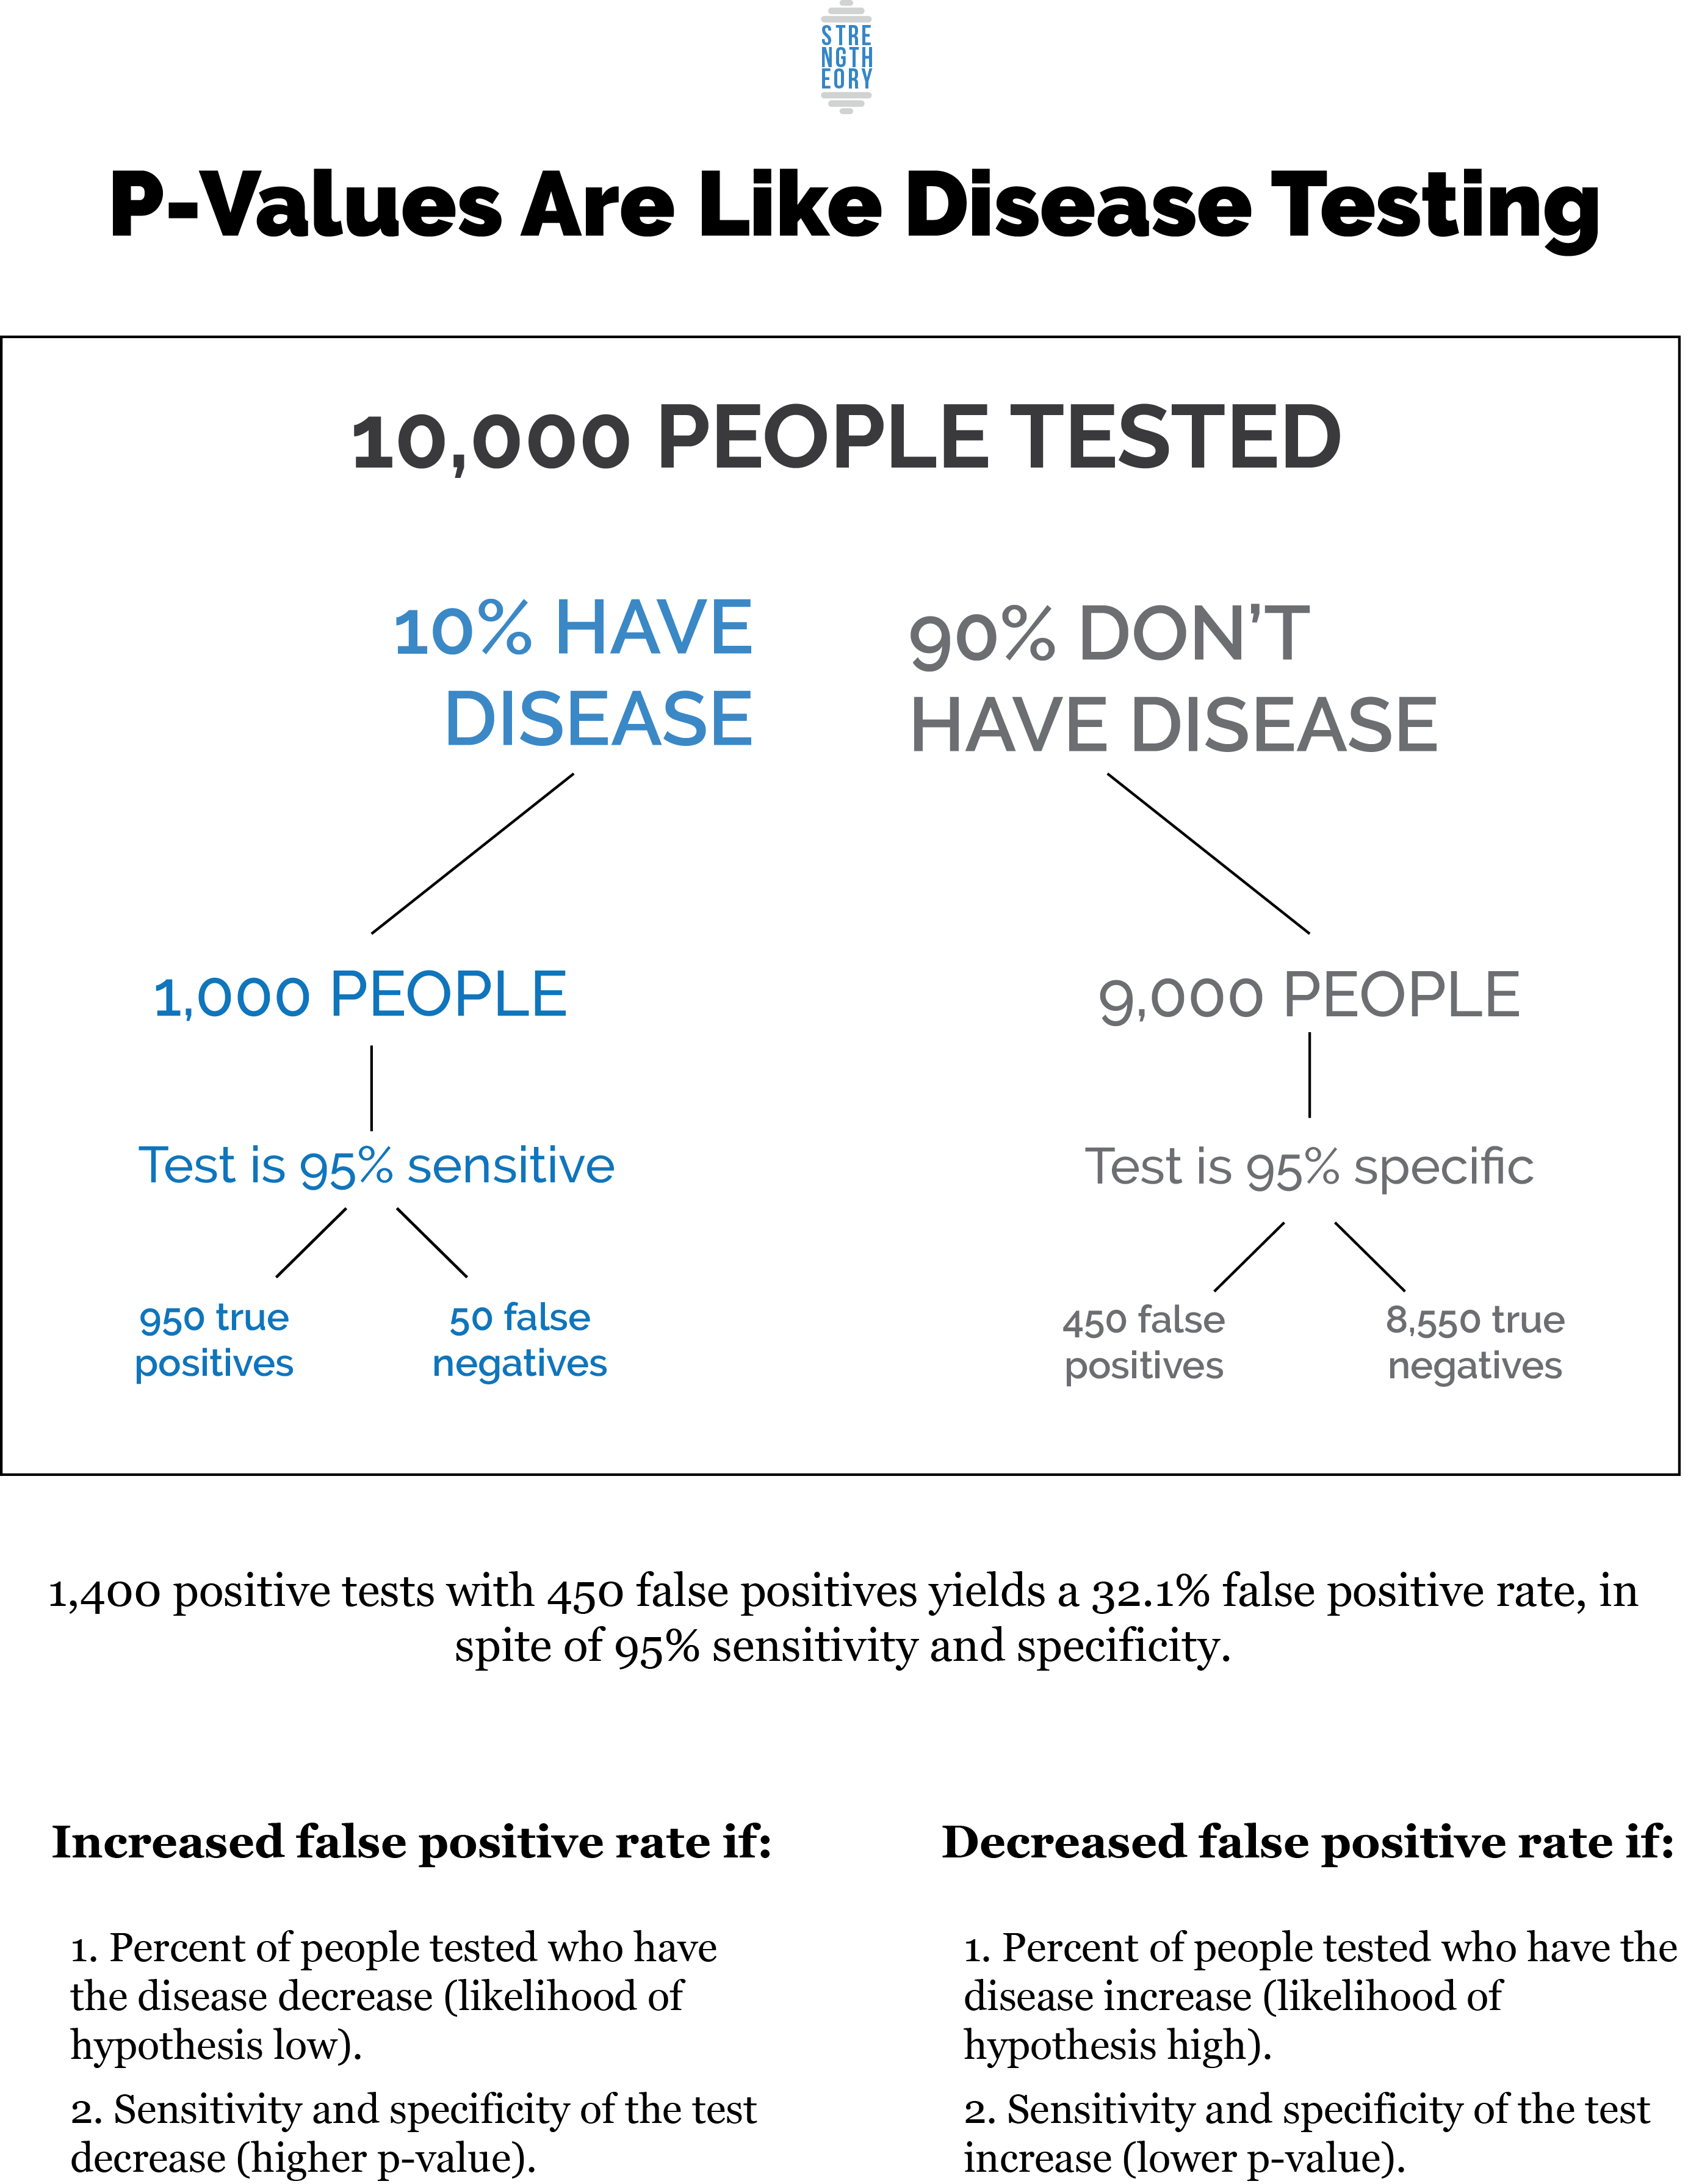 С другой стороны, если у 50% людей, прошедших тестирование, действительно было заболевание, вы получите 4750 положительных тестов от людей с заболеванием, по сравнению с 250 ложными срабатываниями, что даст вам 95% шансов на самом деле иметь заболевание